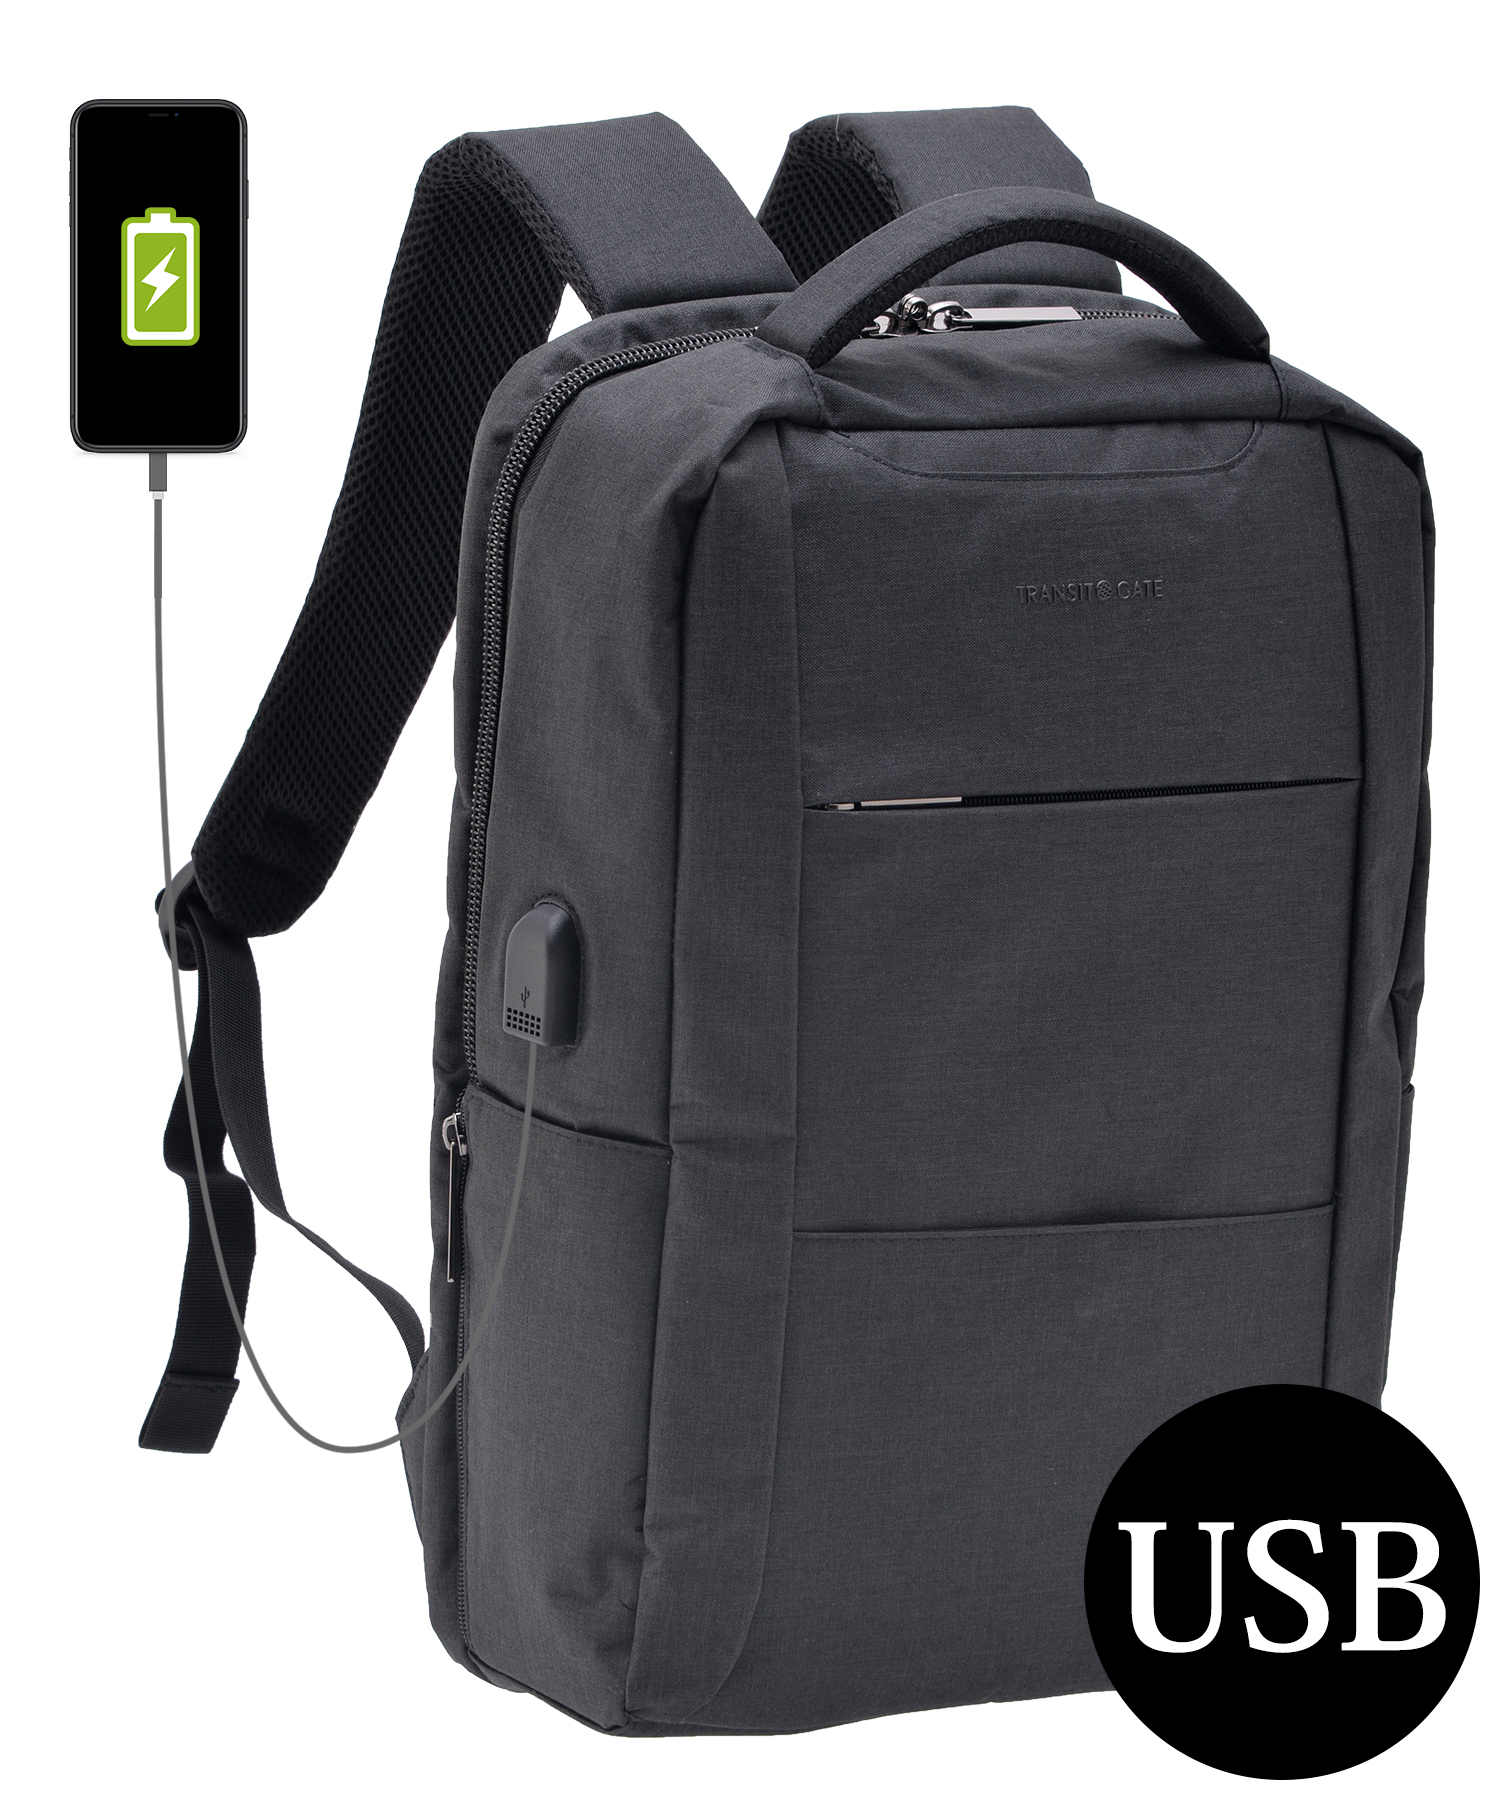 ビジネスリュック 黒   旅行 PCバッグなどに USBポート付き